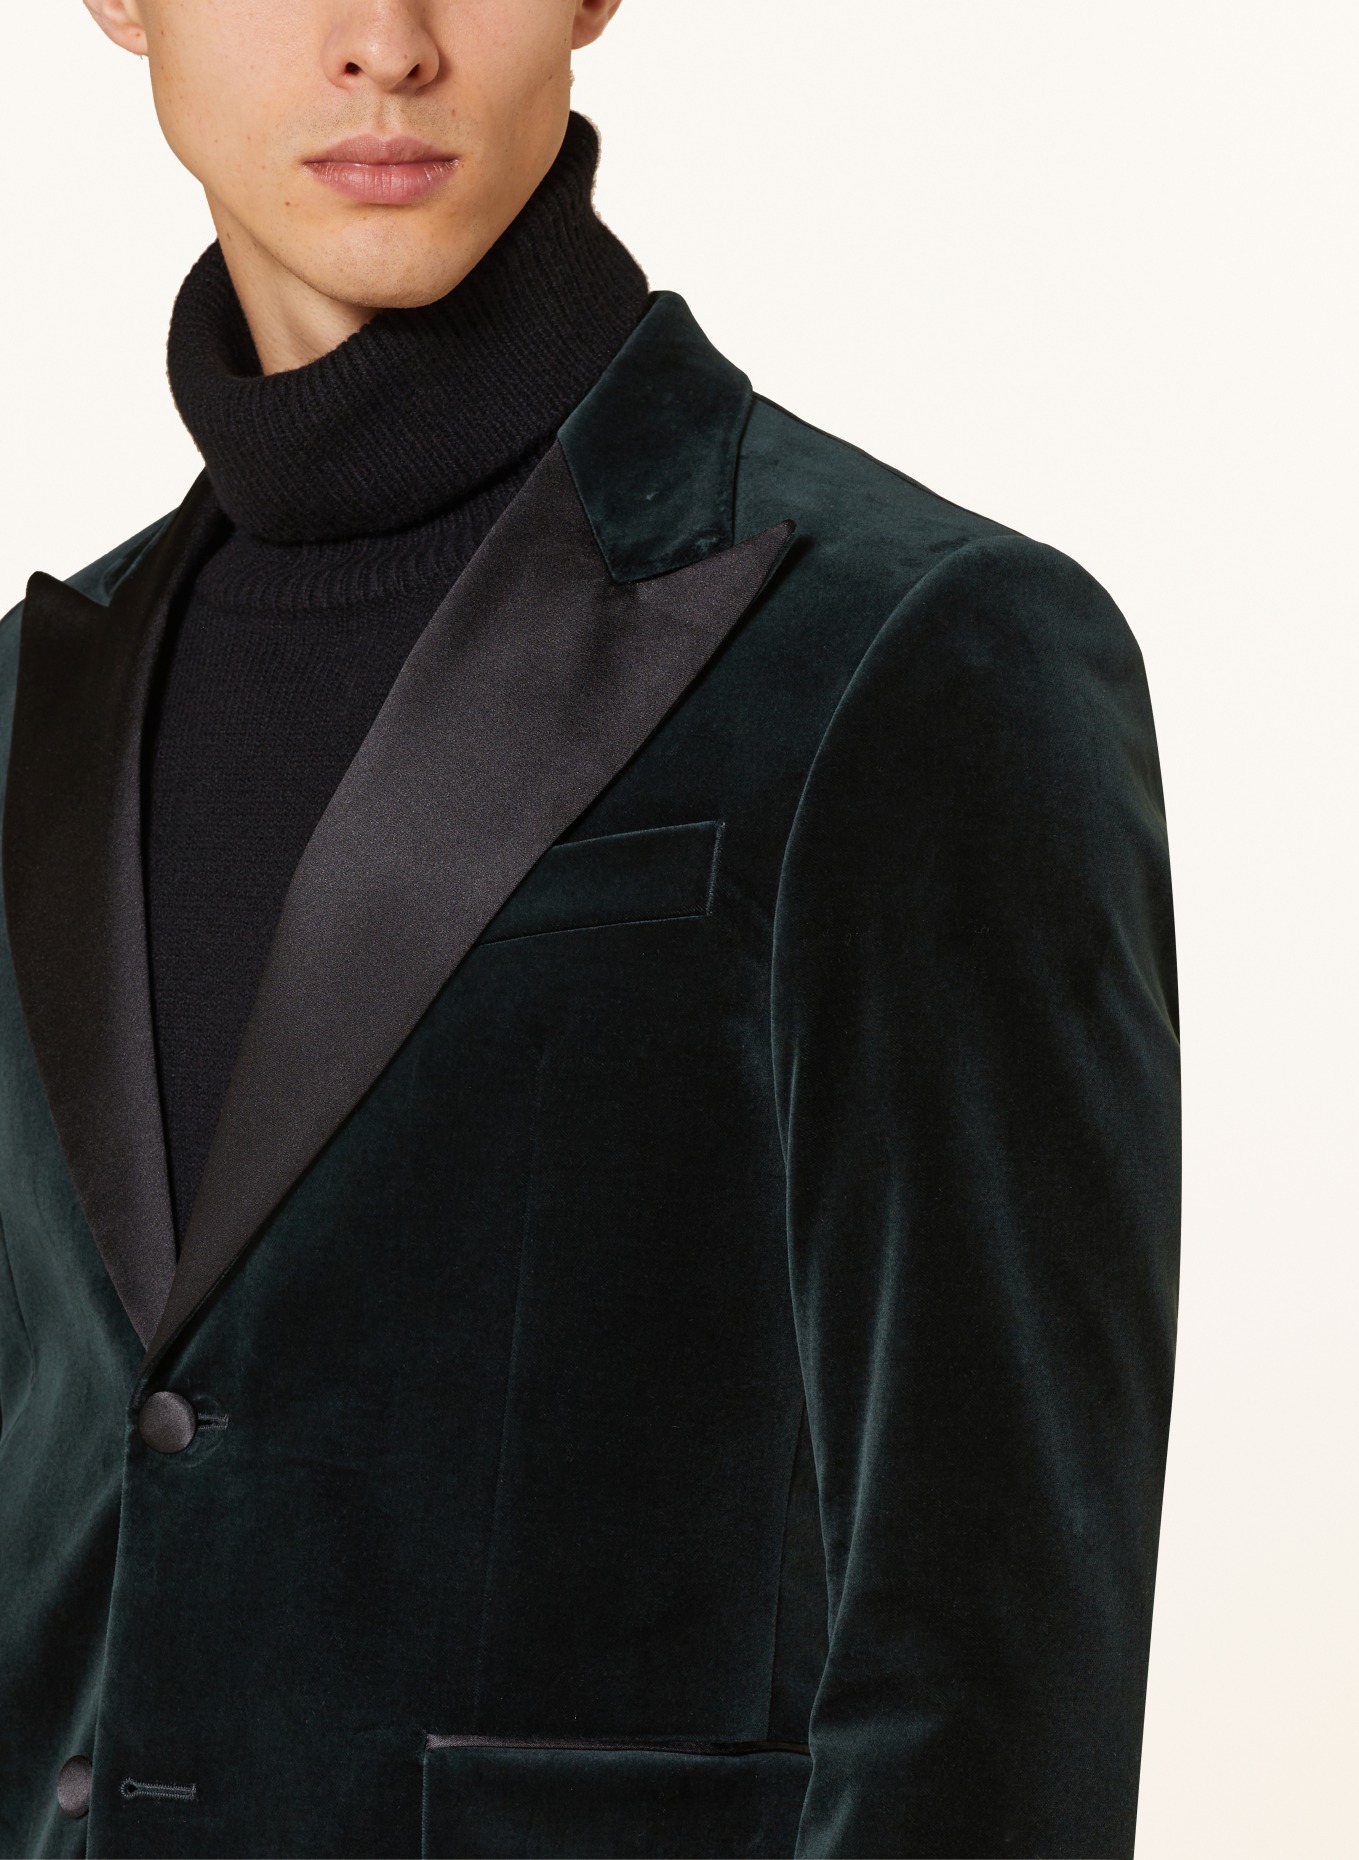 TIGER OF SWEDEN Smoking tailored jacket JEFFERS regular fit made of velvet, Color: DARK GREEN/ BLACK (Image 5)